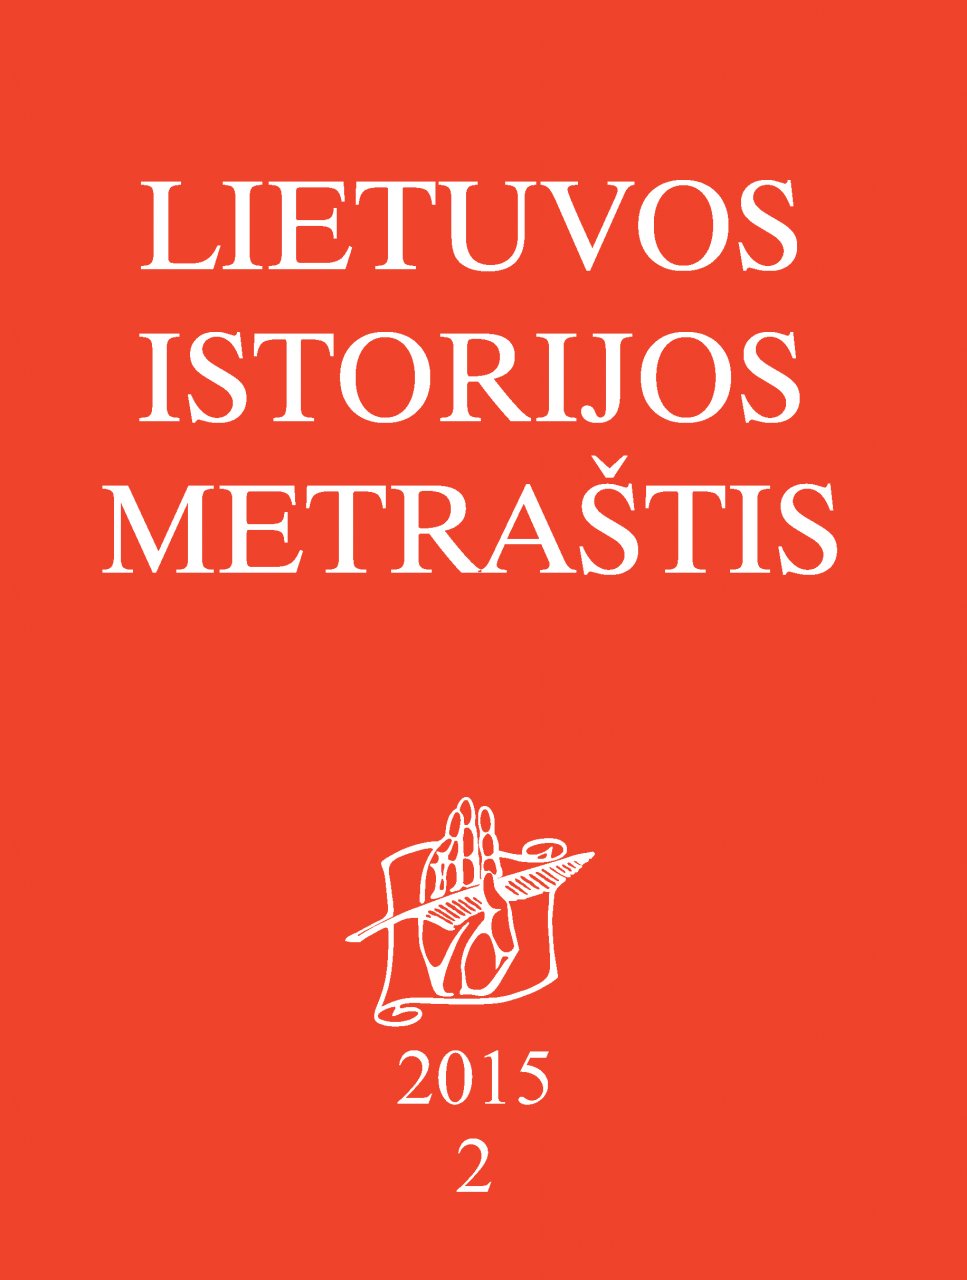 Lietuvos istorijos metraštis 2015 metai 2 